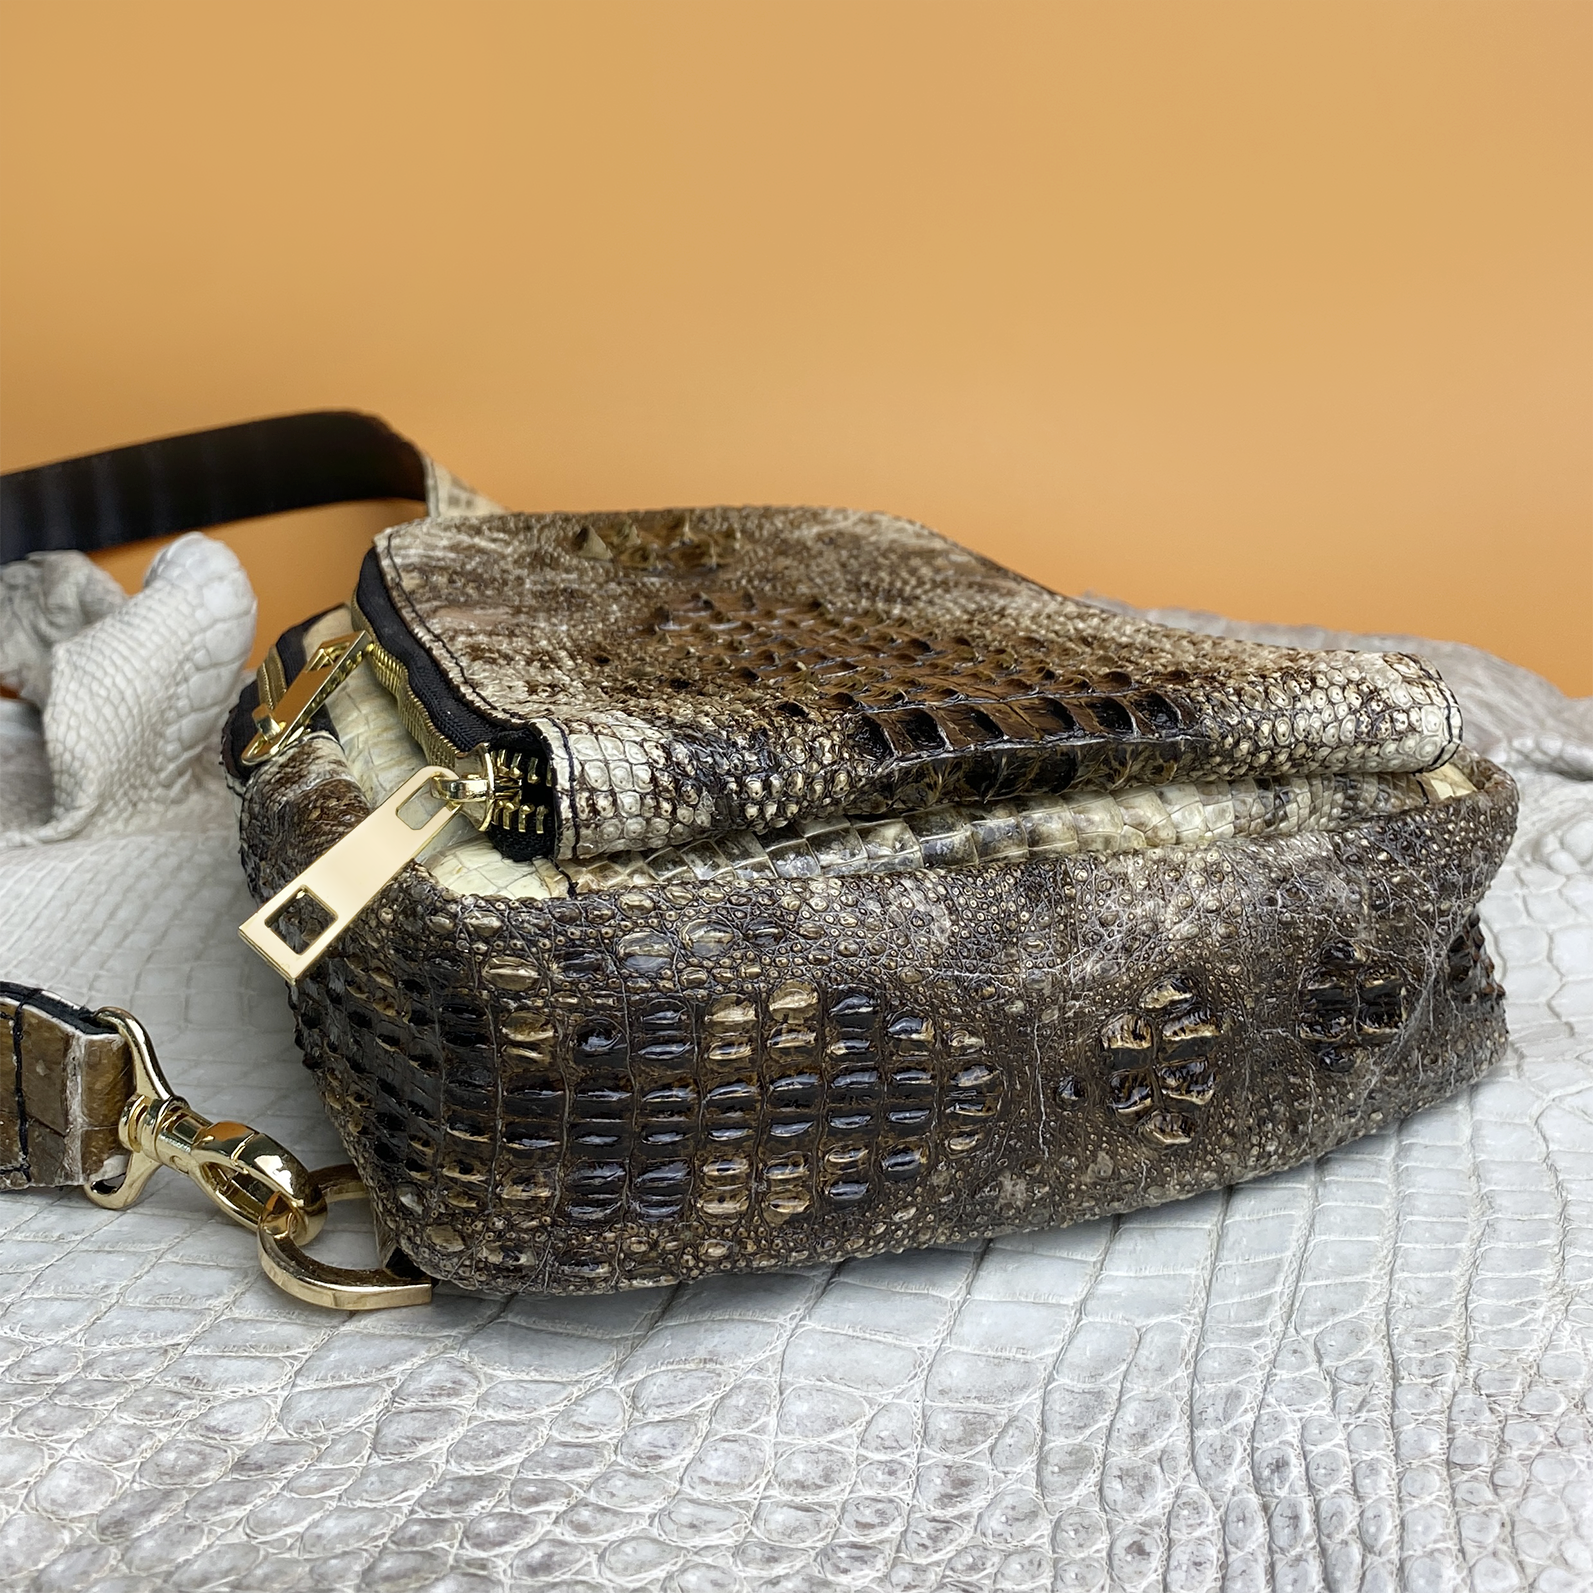 Natural Alligator Crossbody Sling Bag (BUY 1 GET 1 WALLET) | BACKPACK55